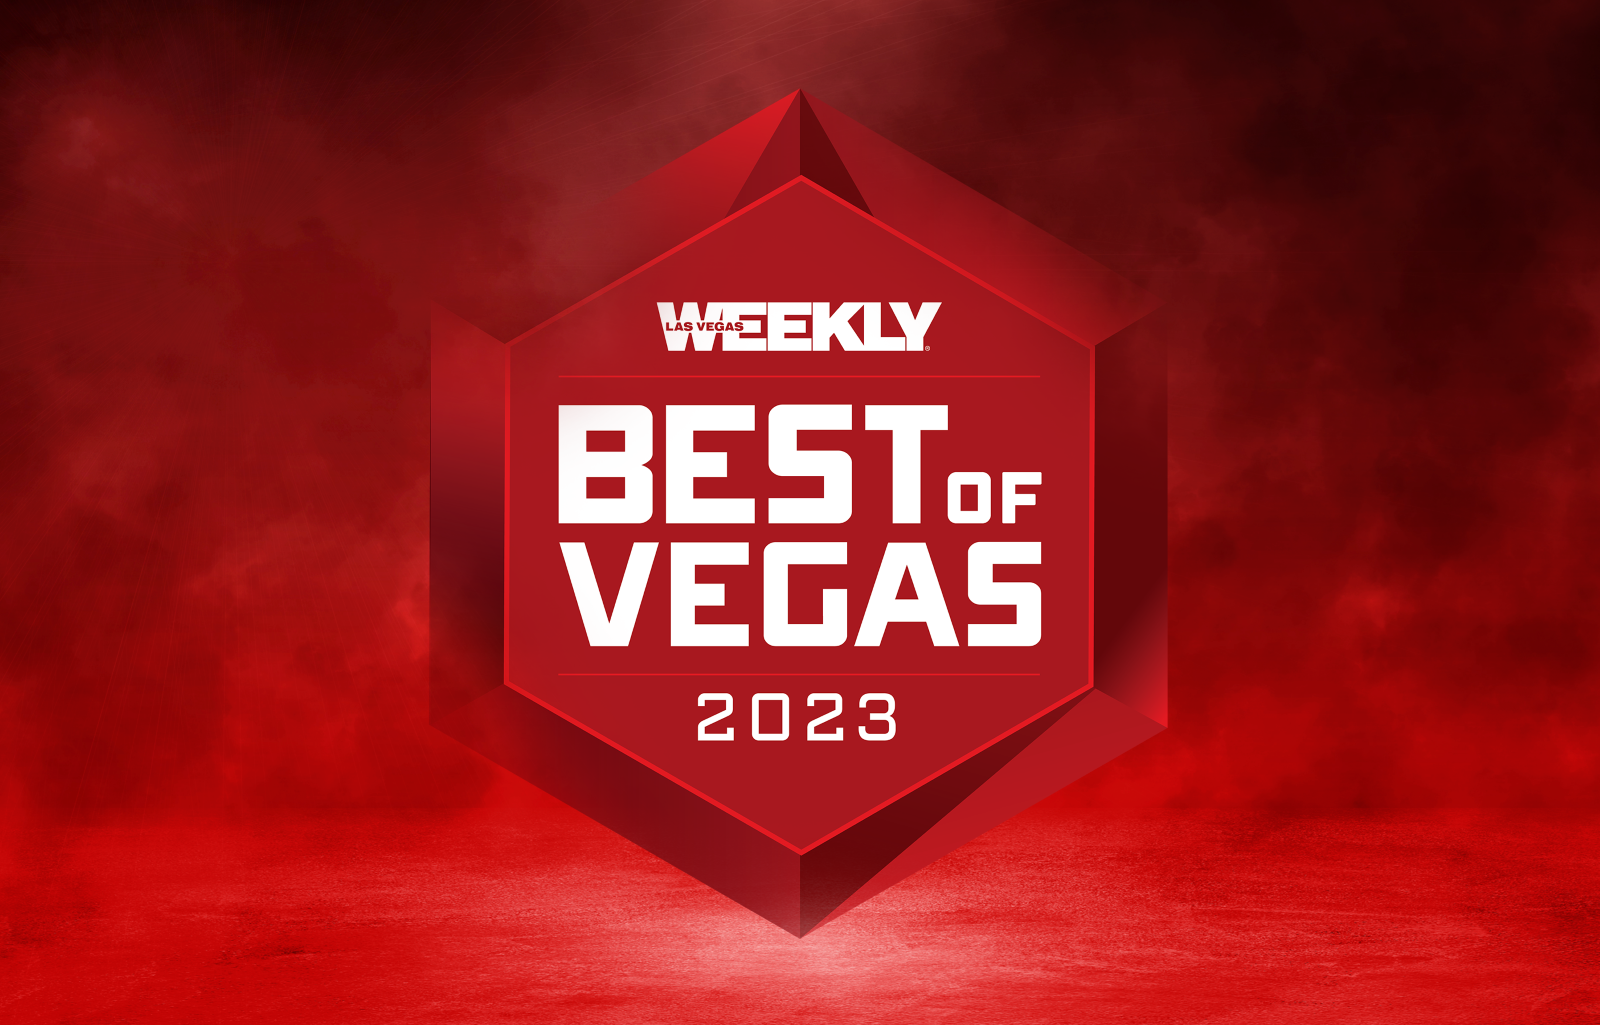 Best of Vegas 2023 Las Vegas Weekly